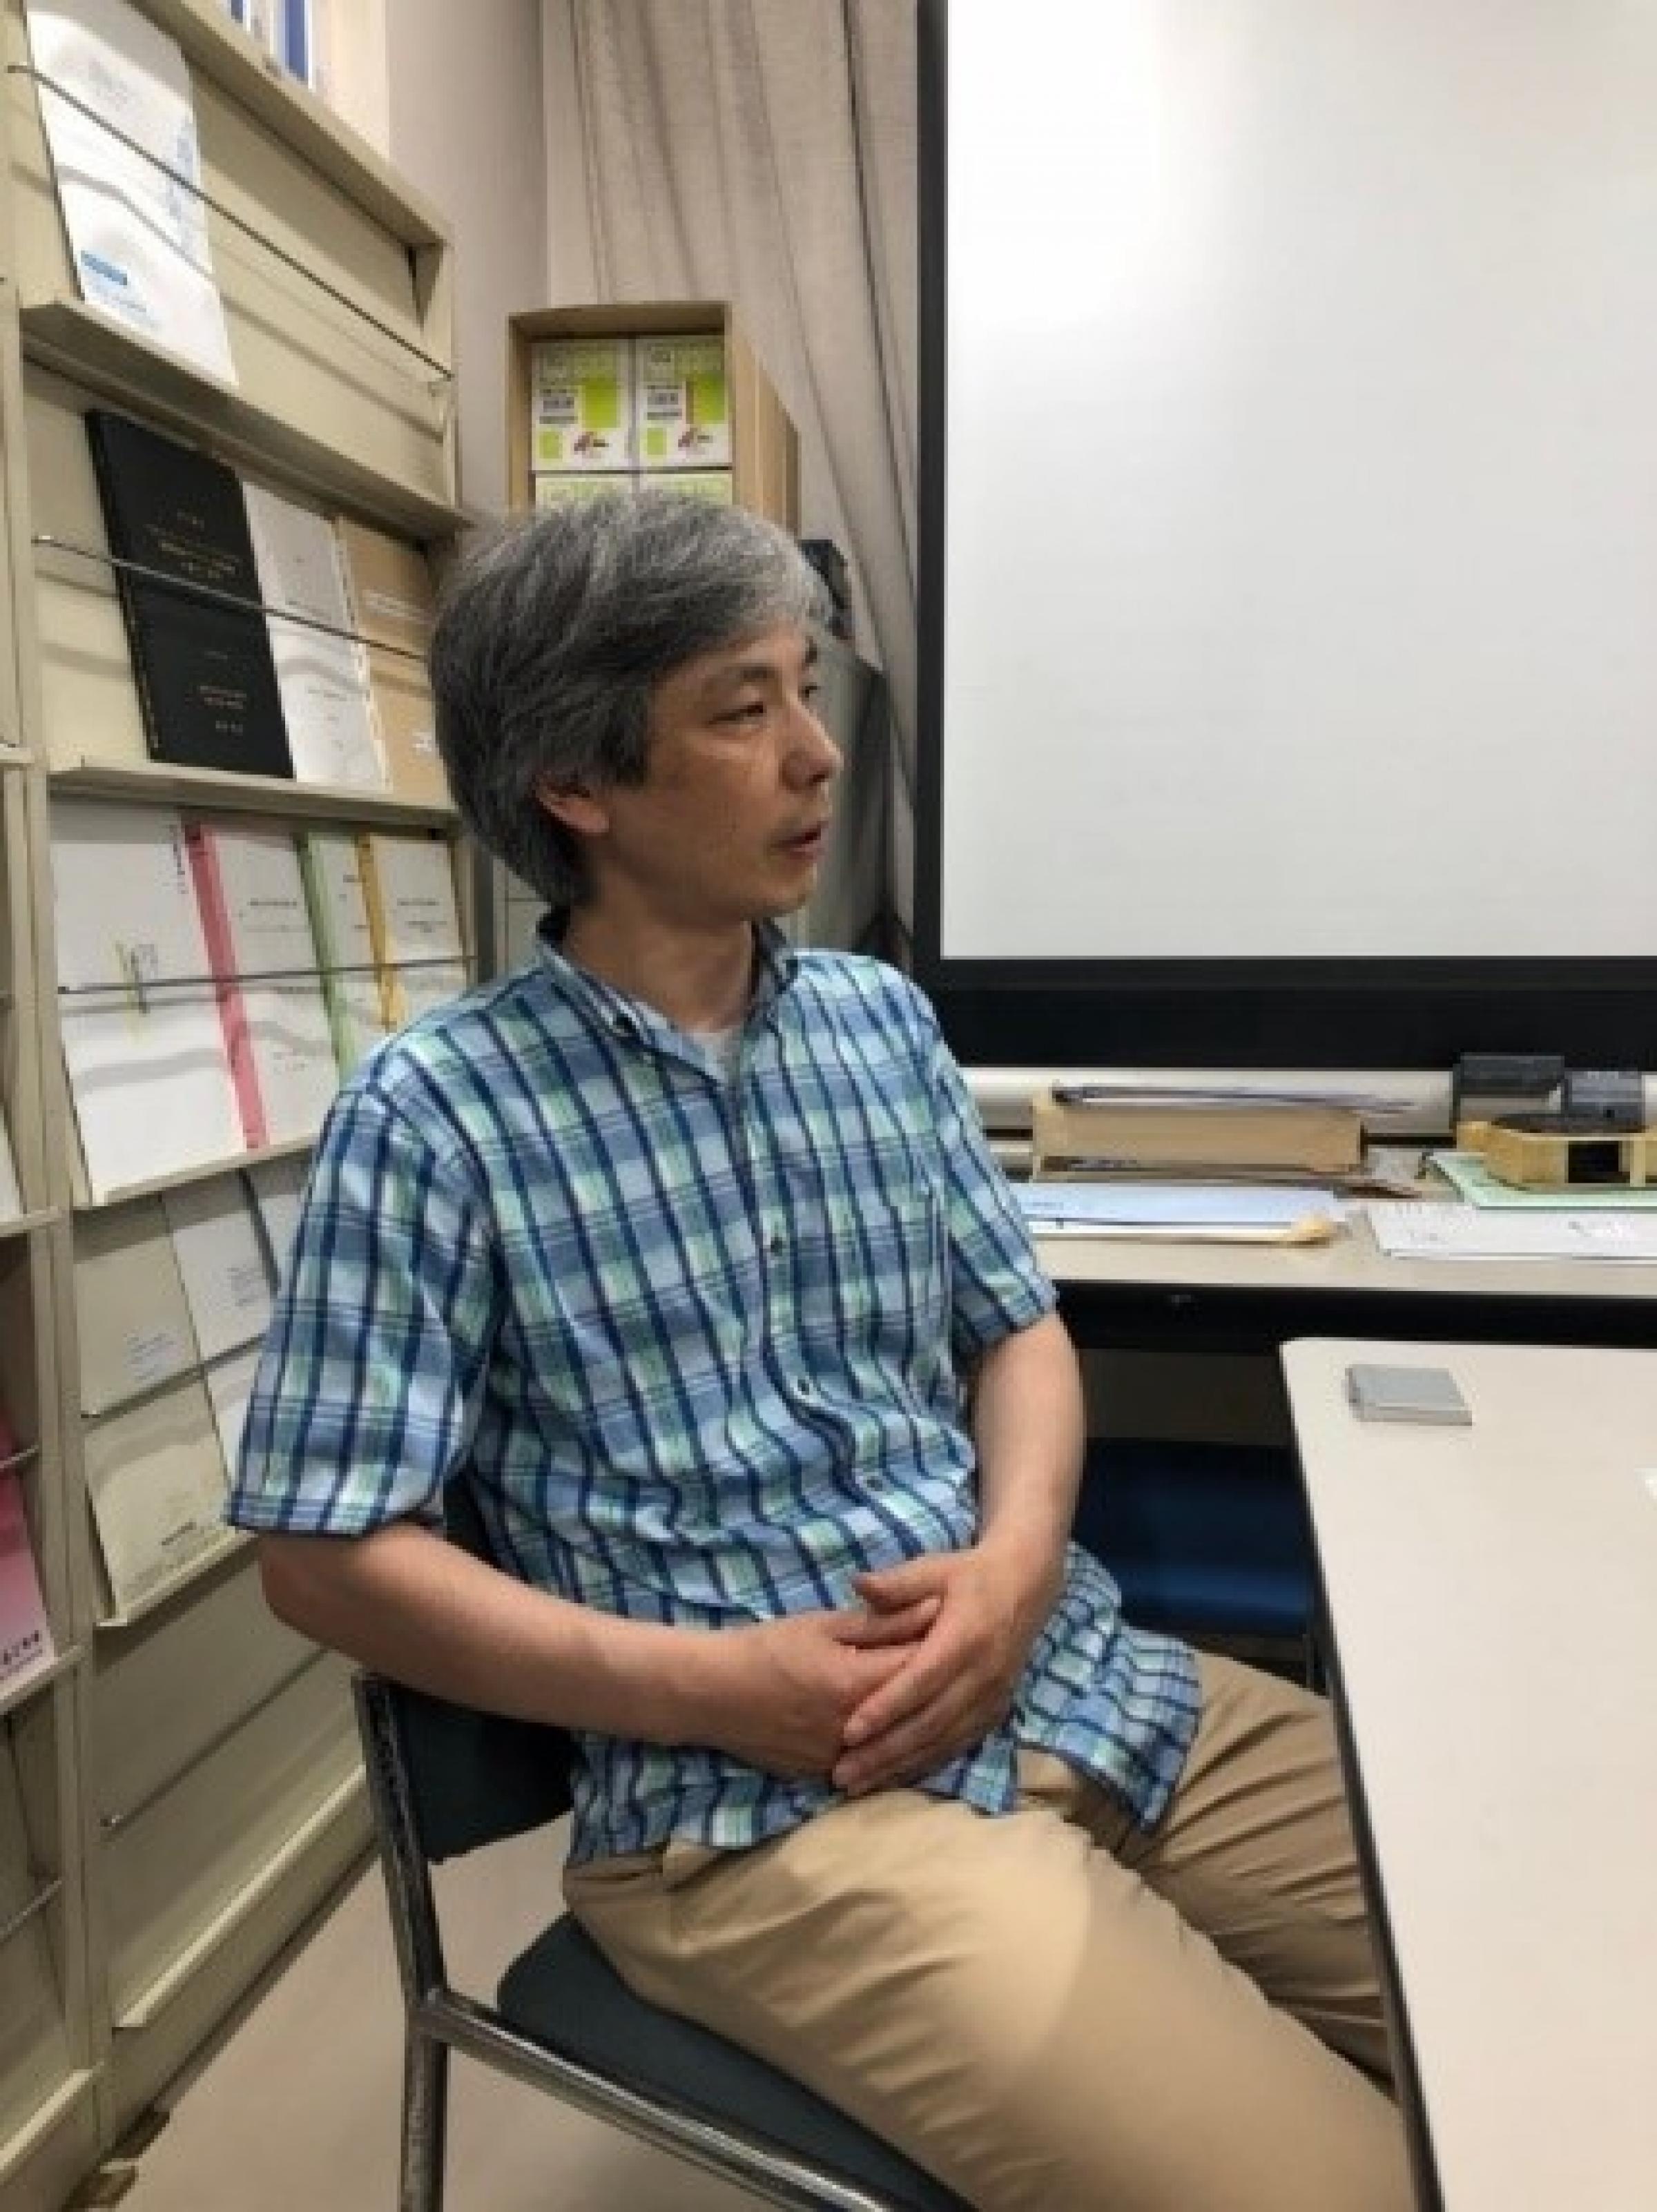 Prof. Takeda